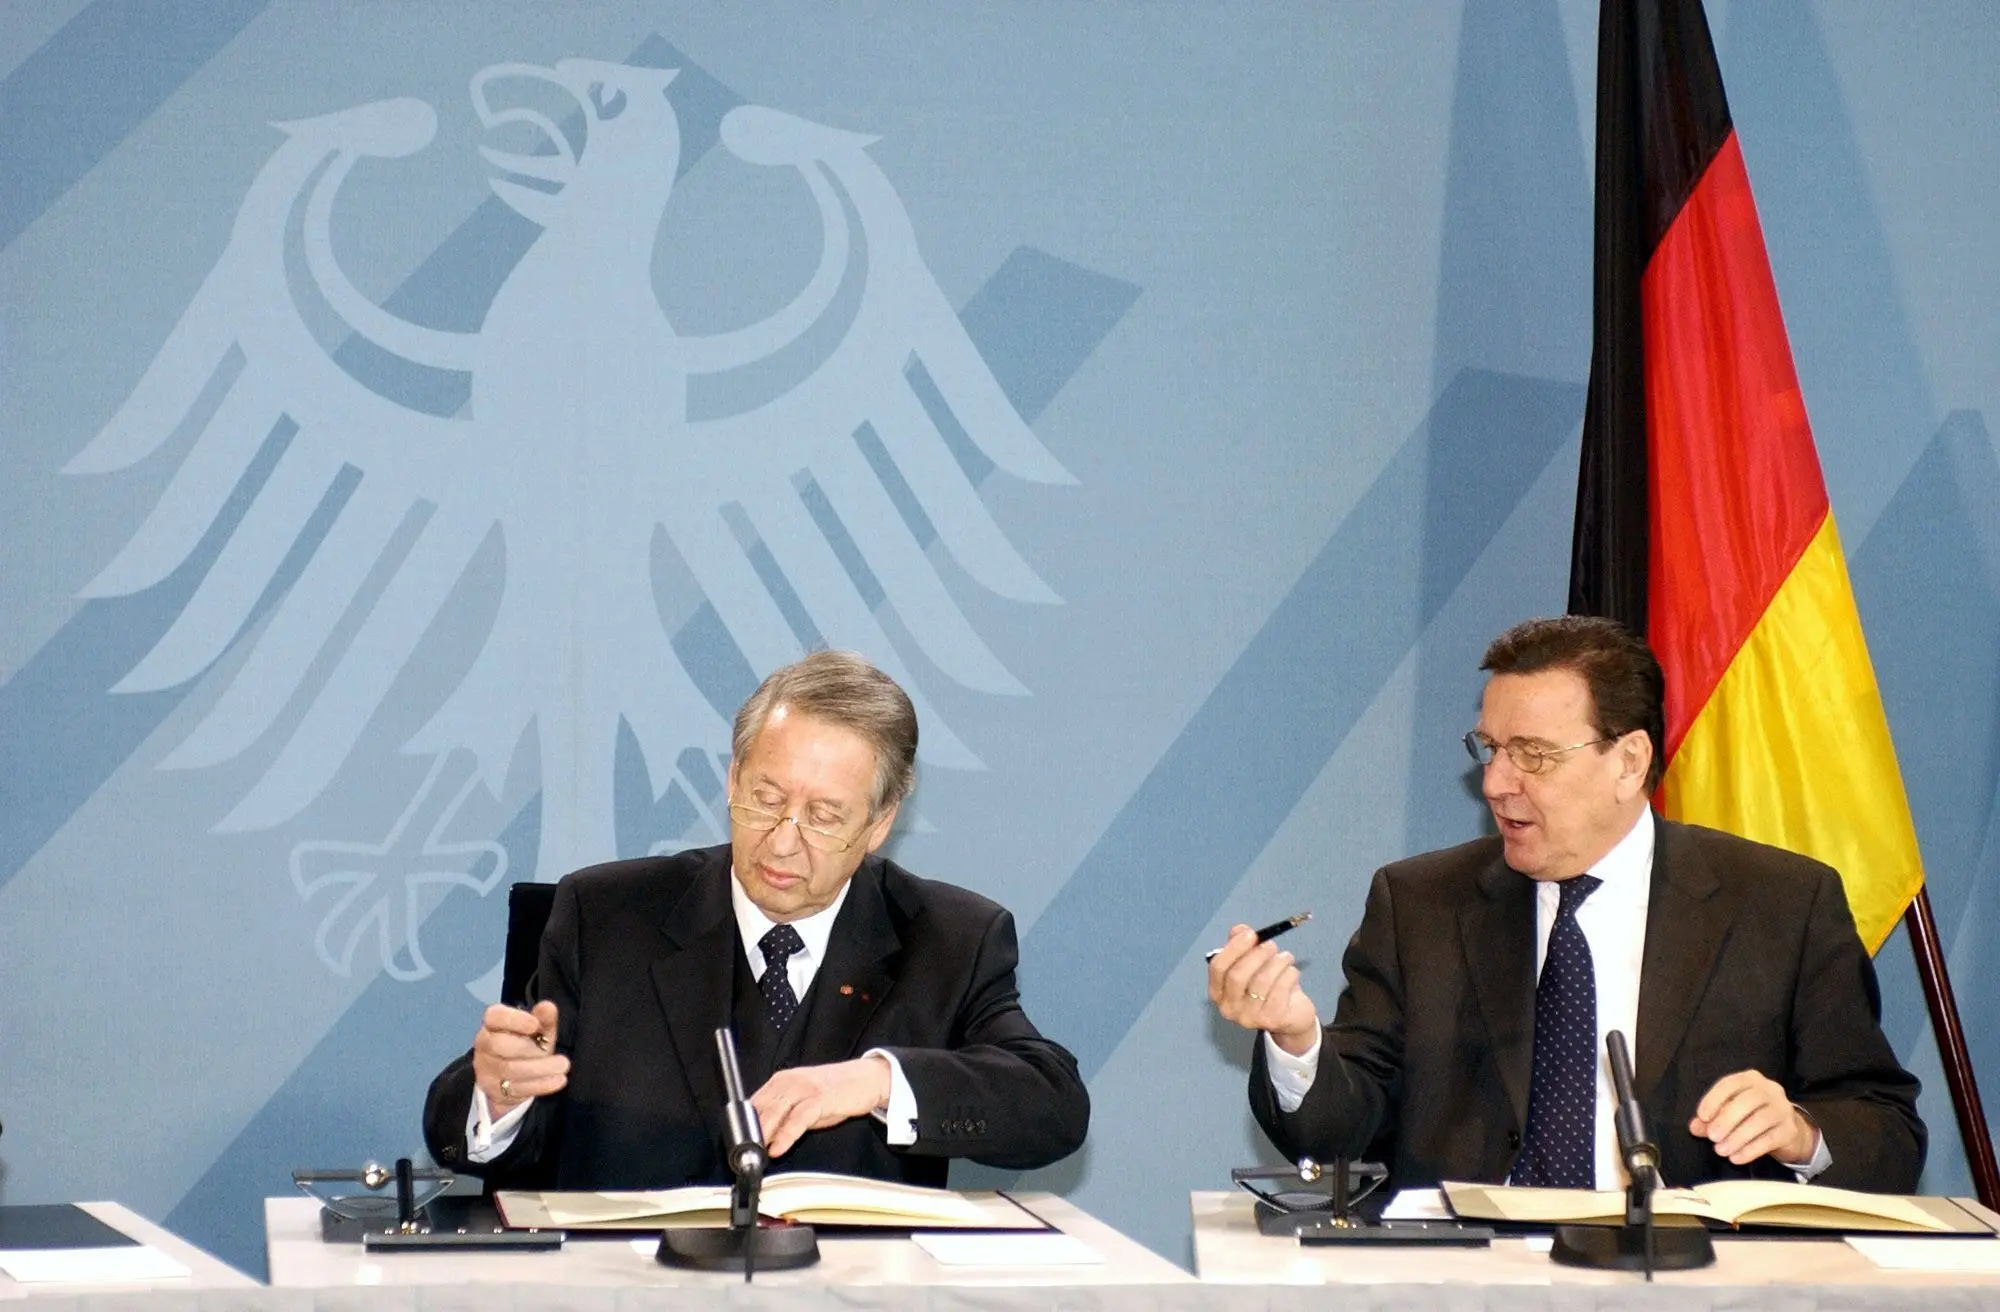 Gerhard Schröder, Paul Spiegel unterschreiben die Urkunden des Staatsvertrages